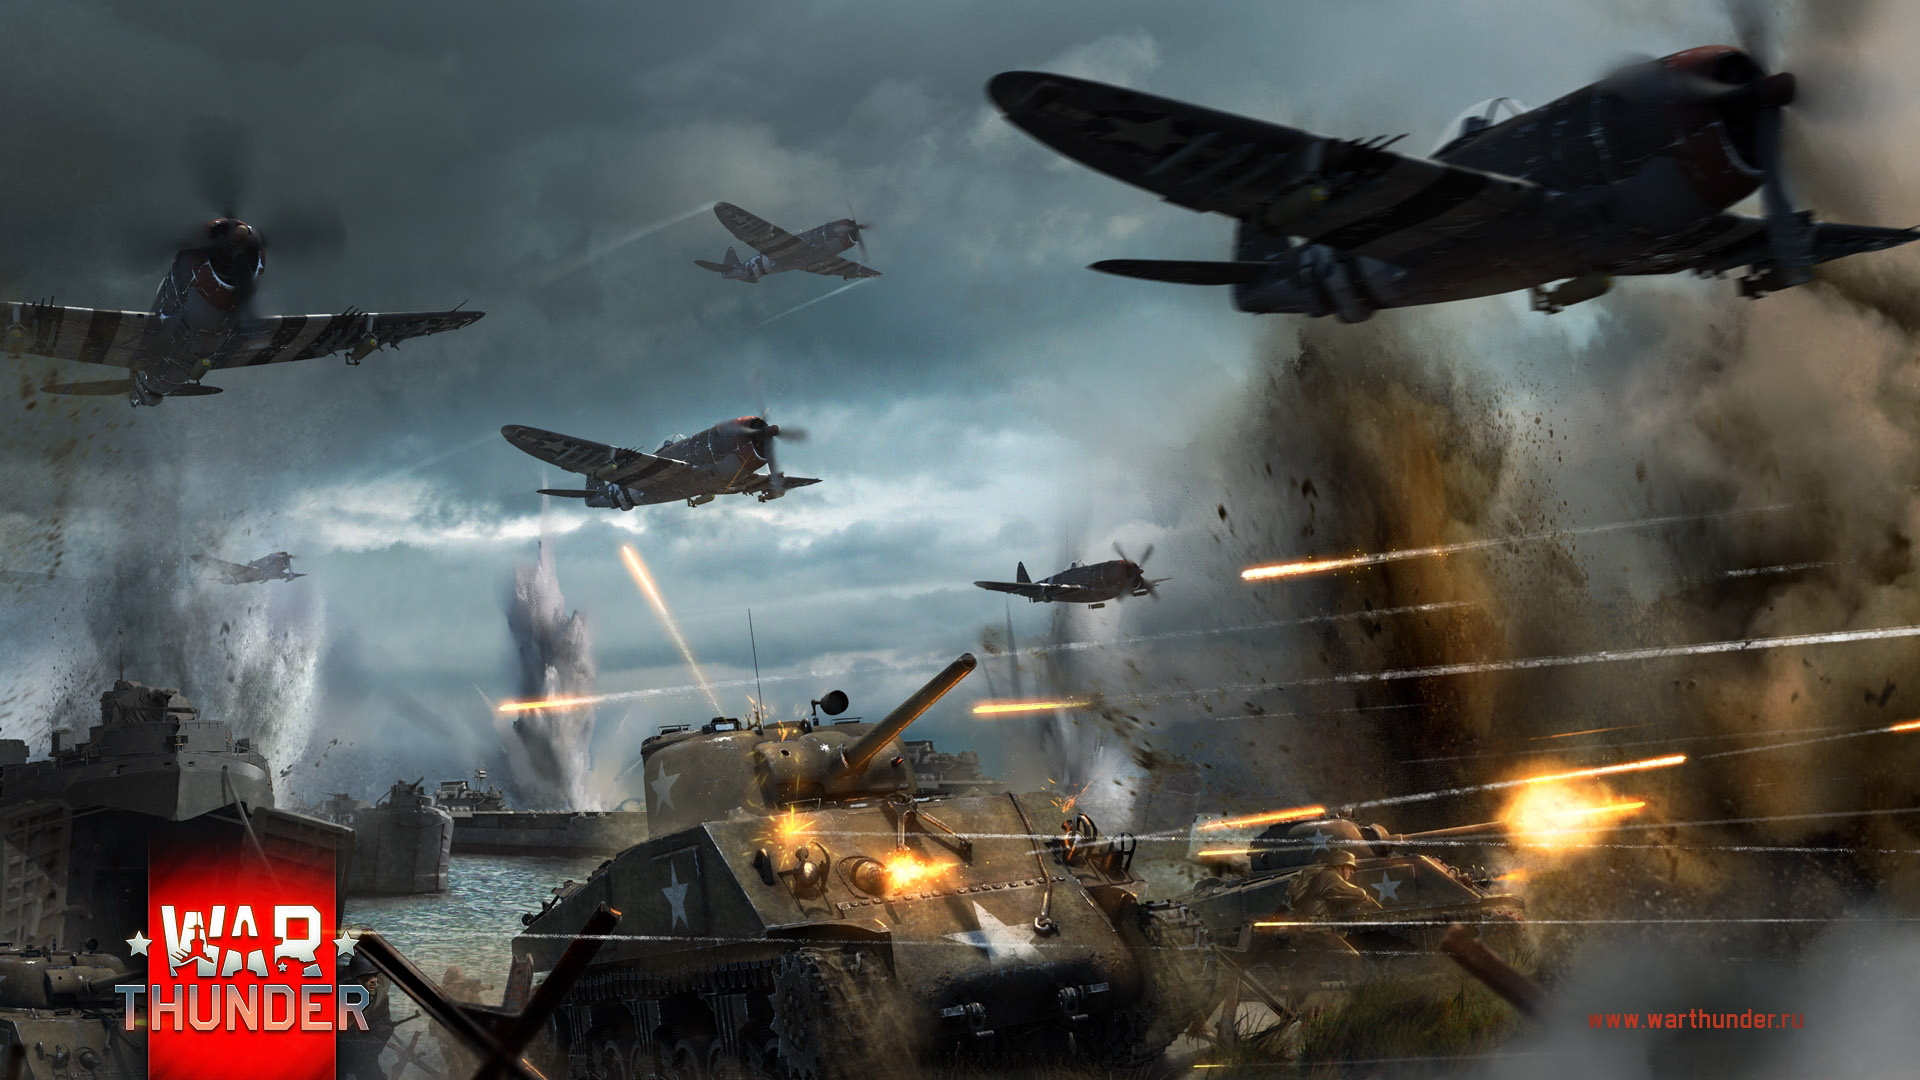 壁紙 19x1080 War Thunder 飛行機 P 47 M4 Sherman ゲーム ダウンロード 写真